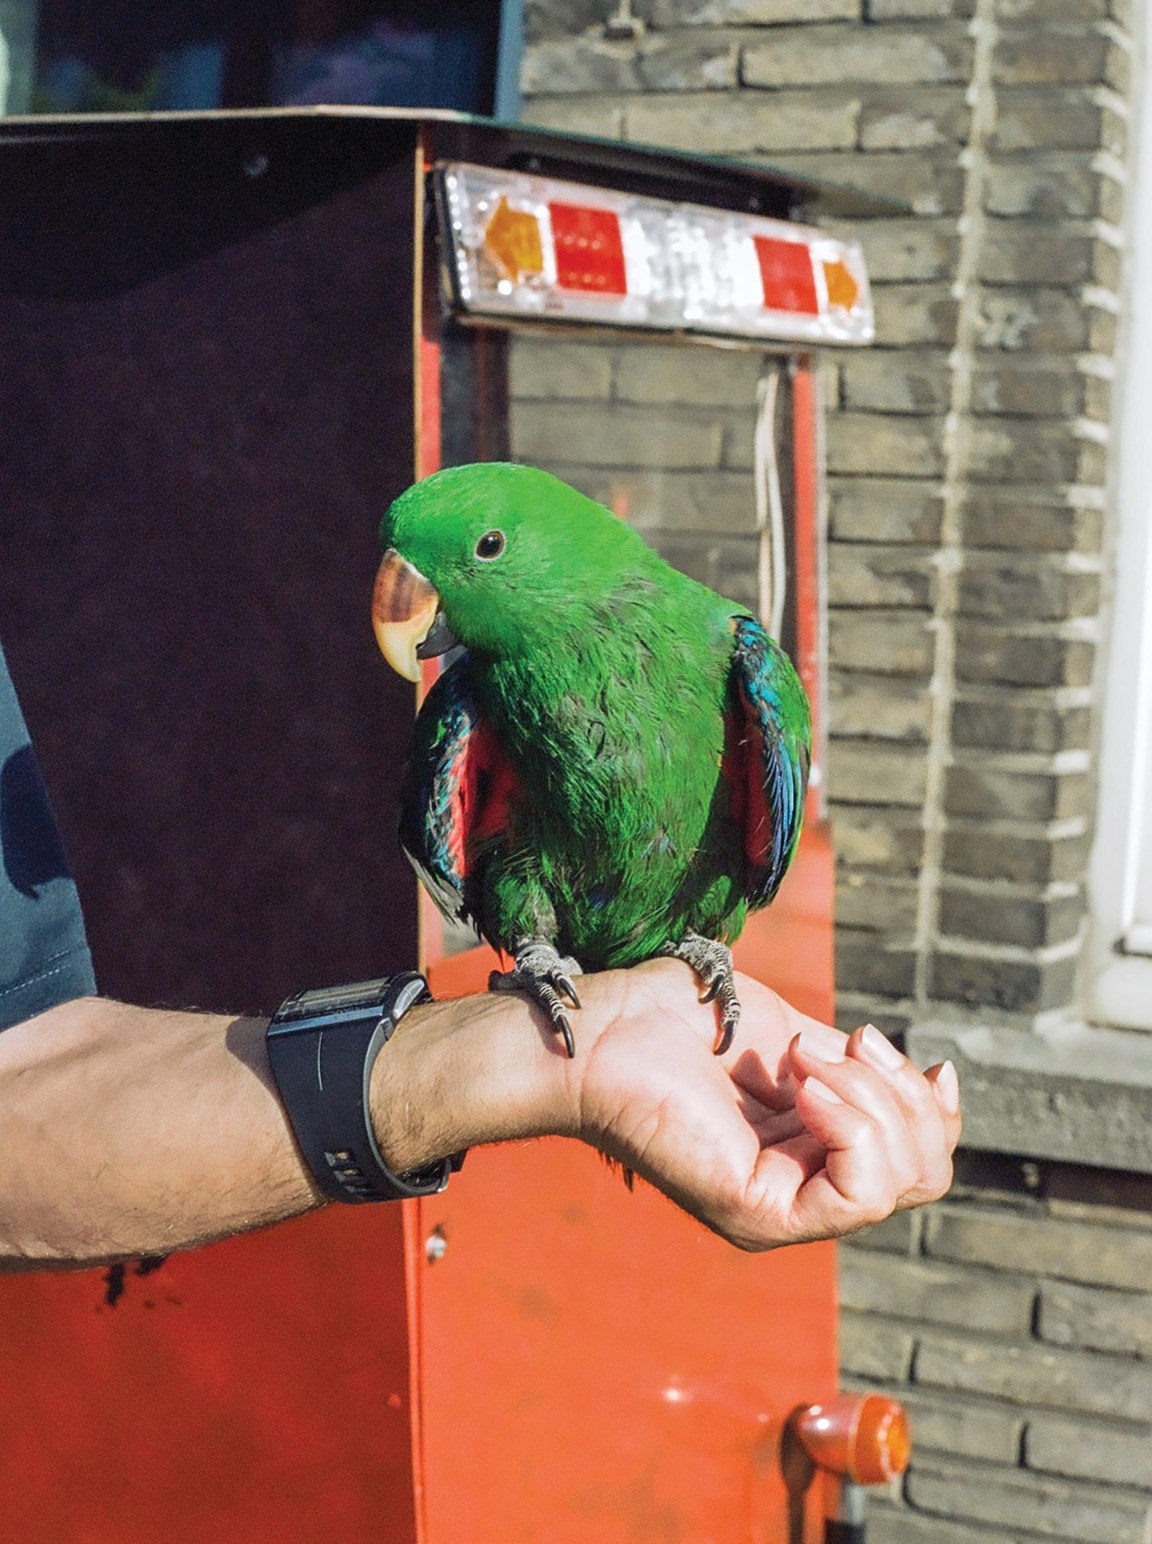 Banyan magie Oneindigheid De papegaai van Habip | De Standaard Mobile